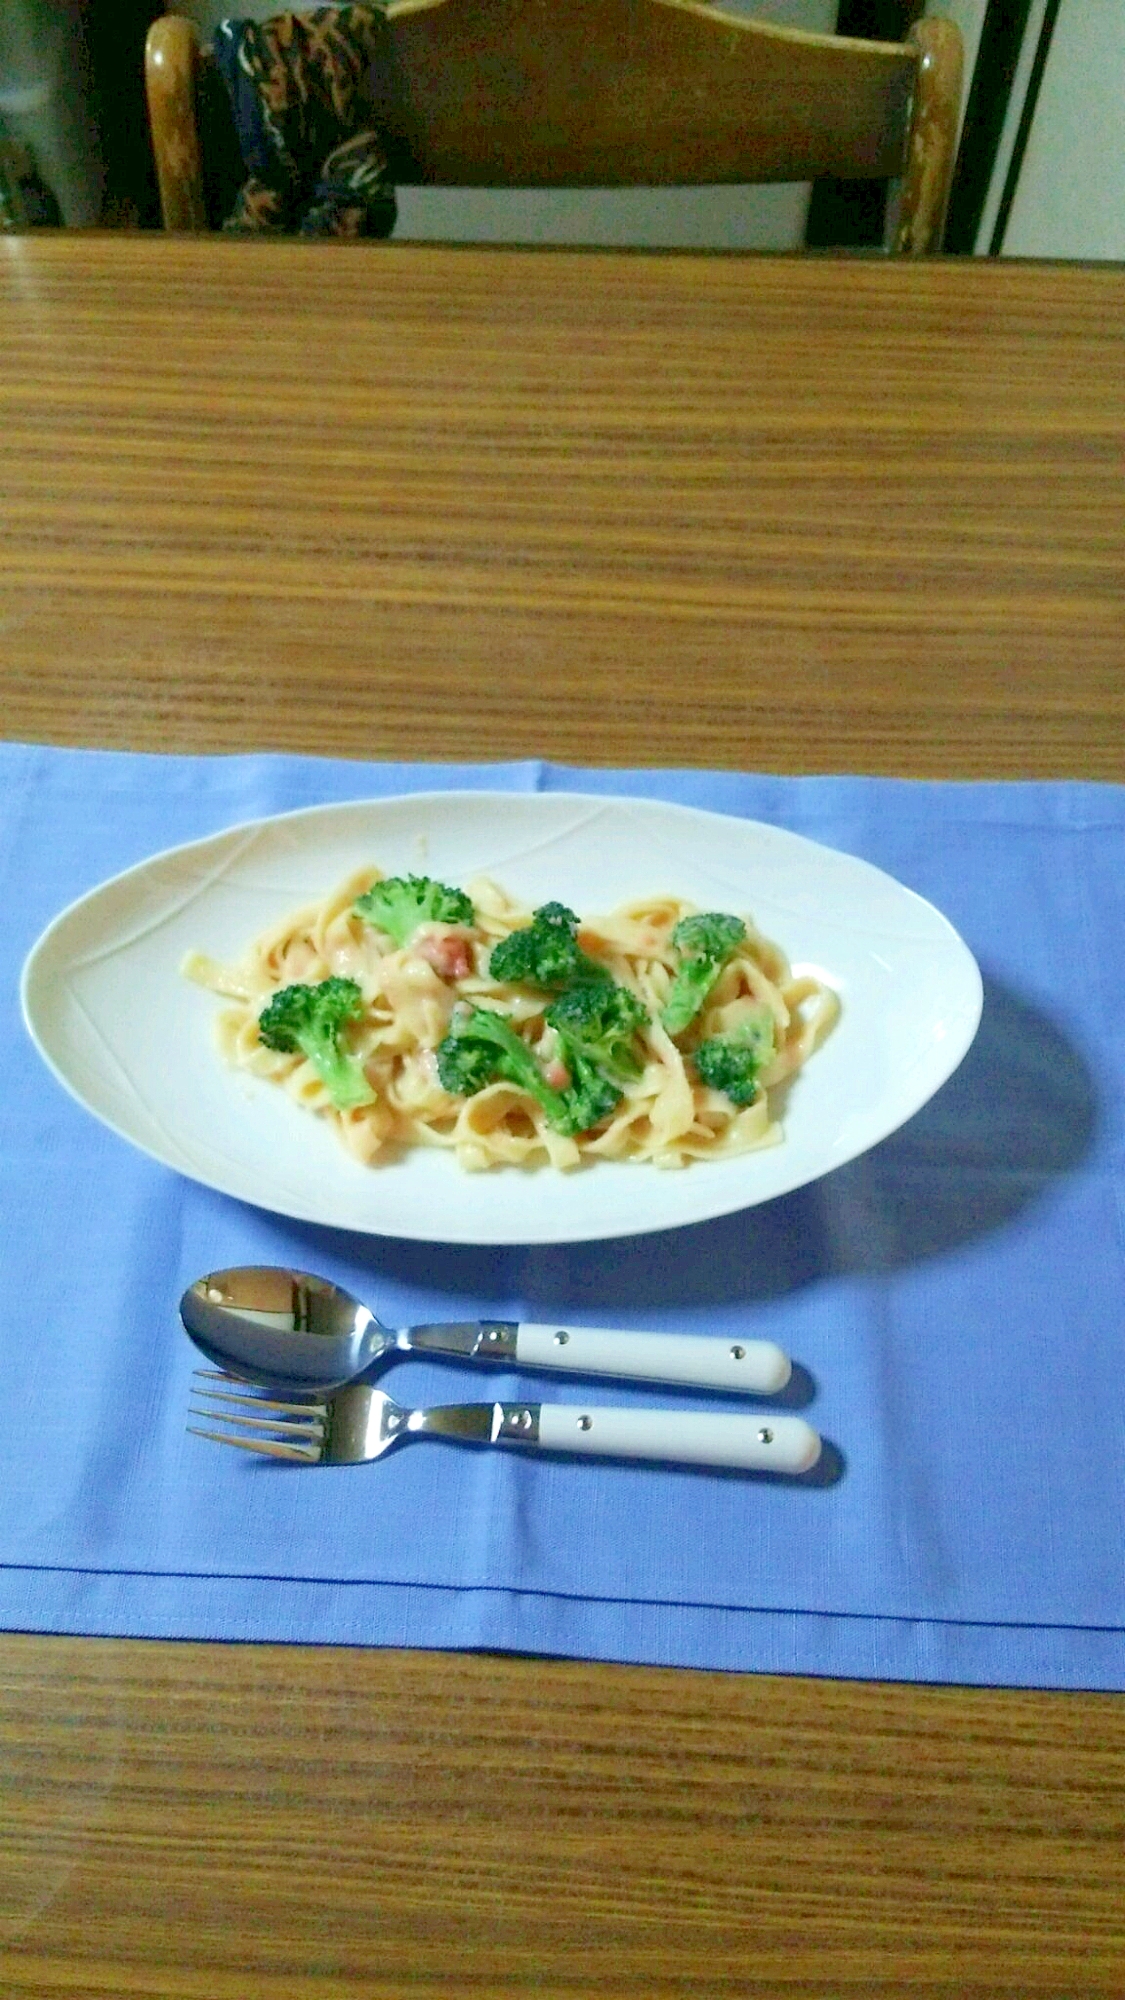 ヨウサマの『タニタ式』ダイエット食タラコスパゲティ